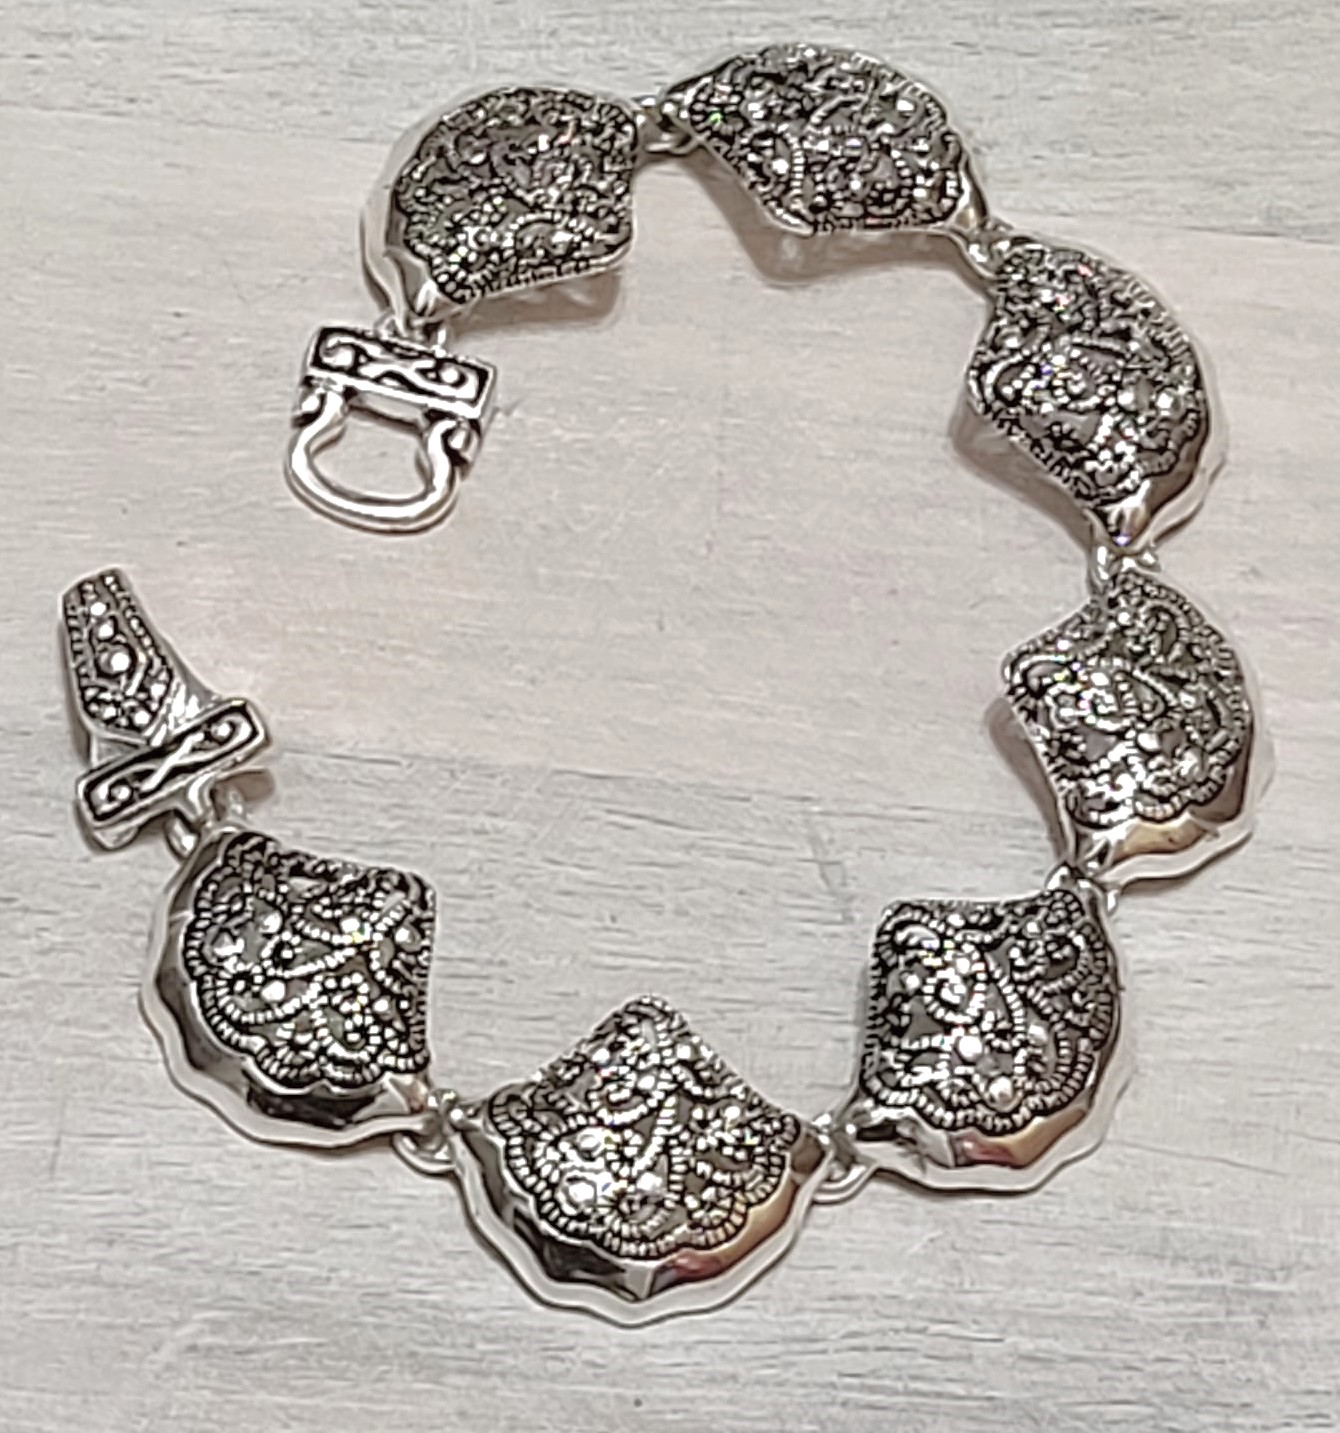 Filigree bracelet, shell shaped links